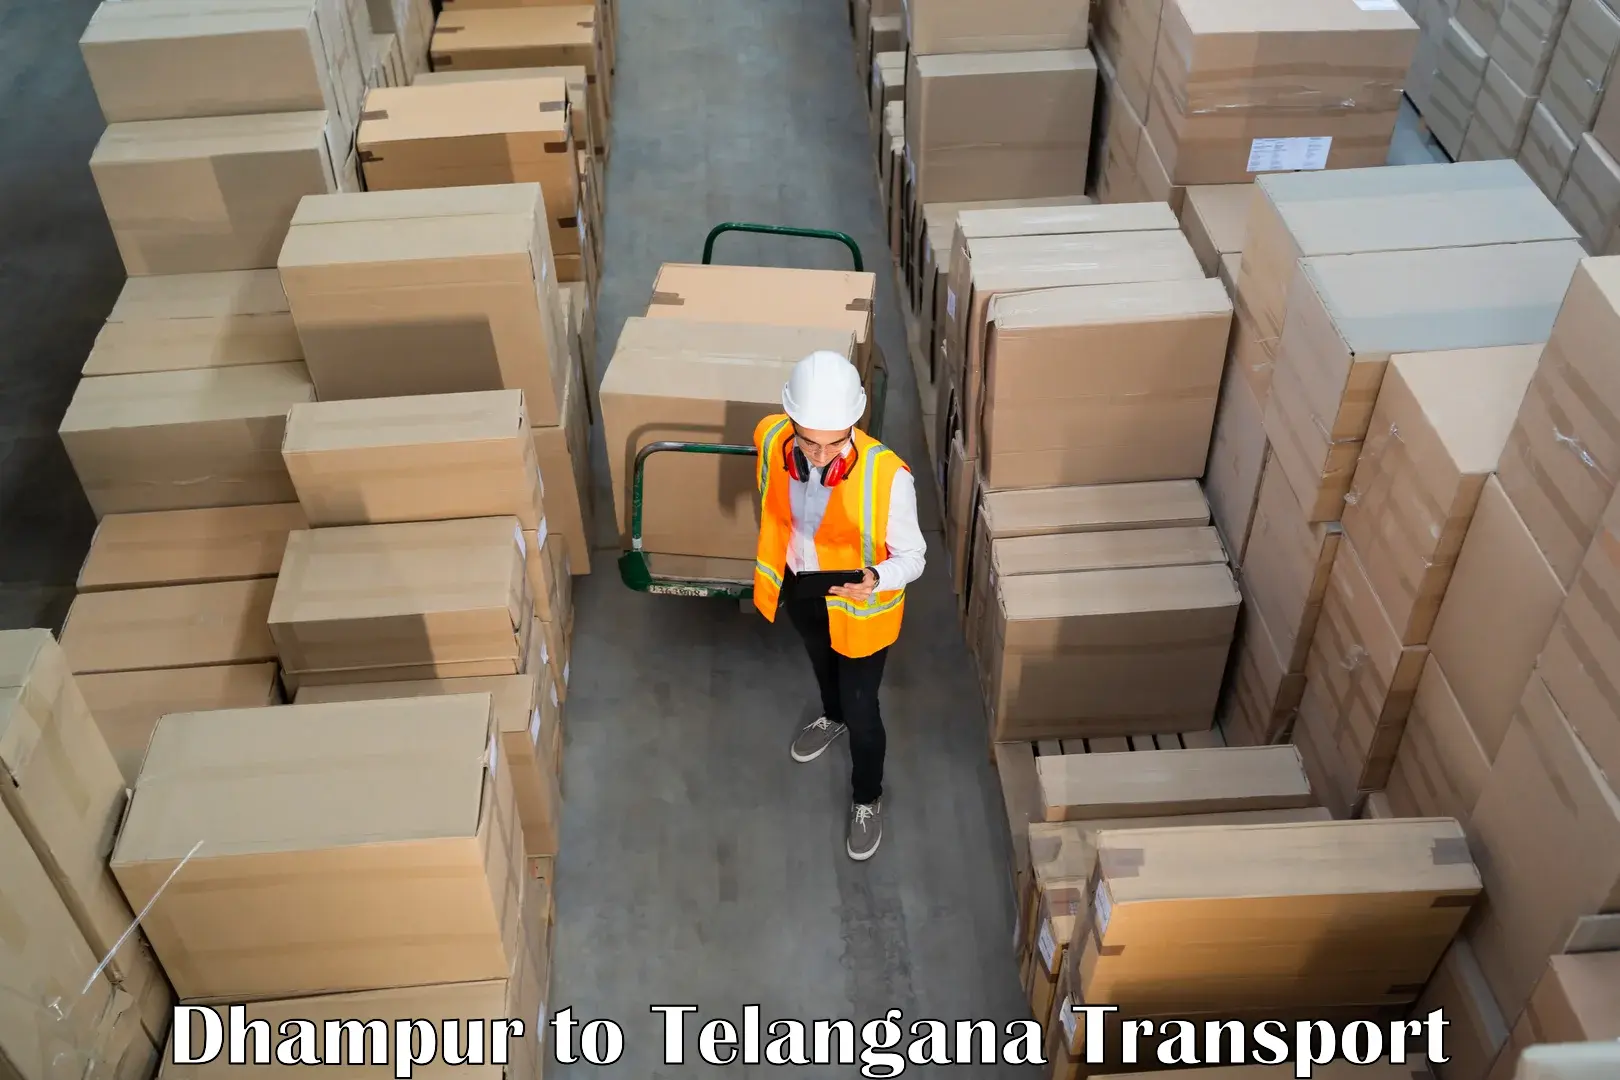 Shipping partner Dhampur to Warangal